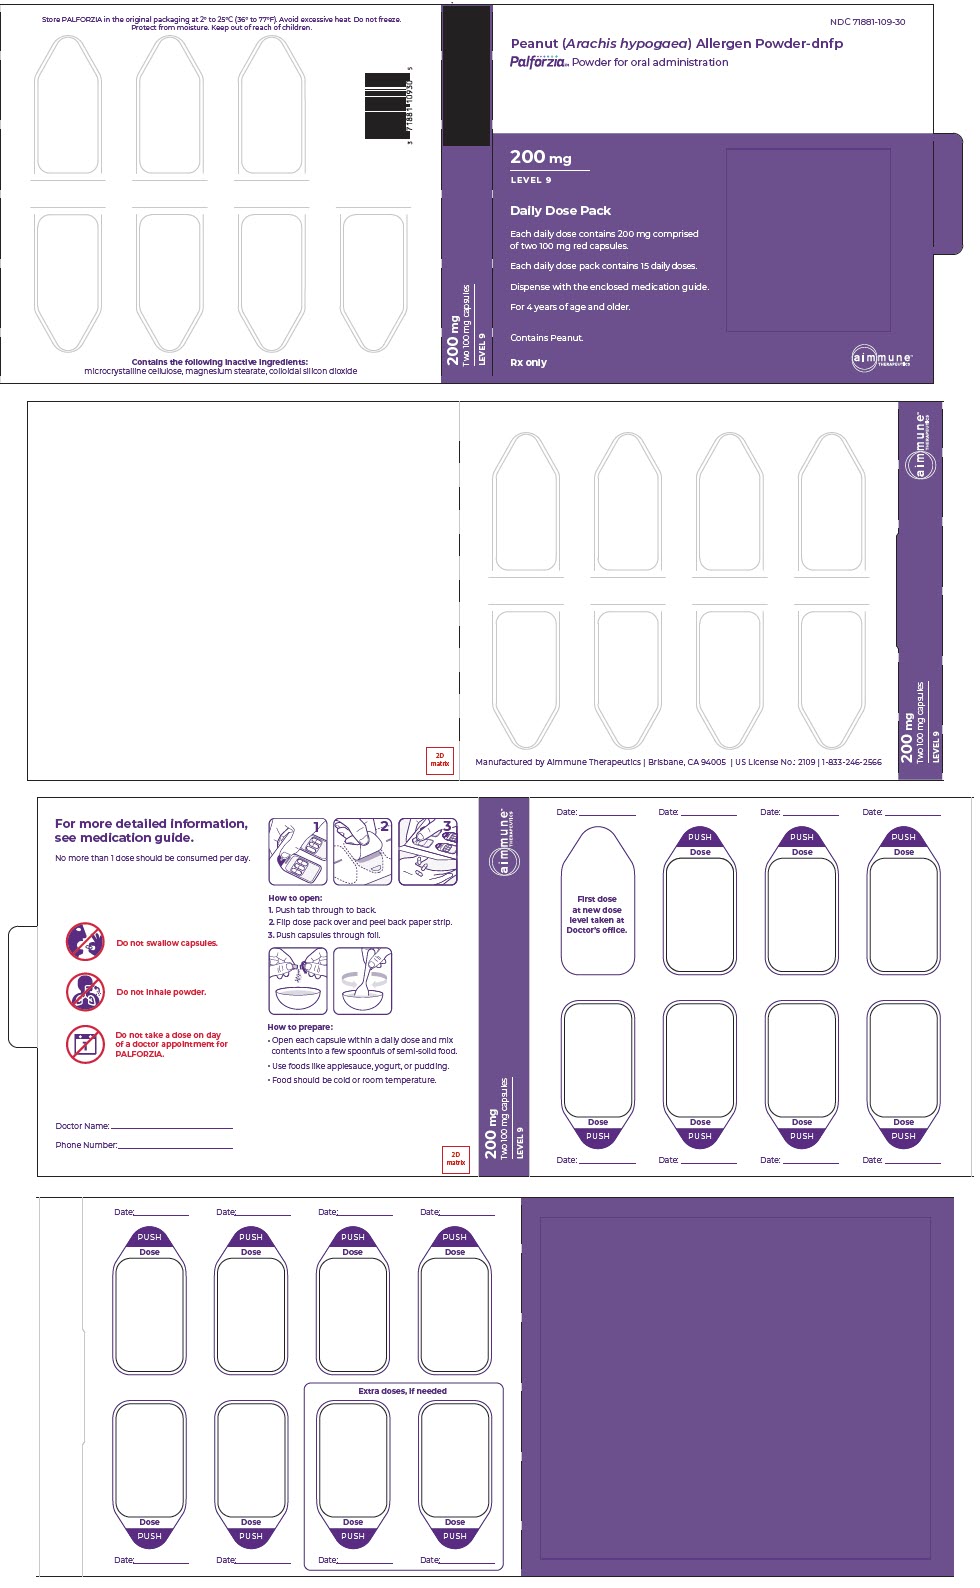 PRINCIPAL DISPLAY PANEL - Two 100 mg Capsule Dose Pack